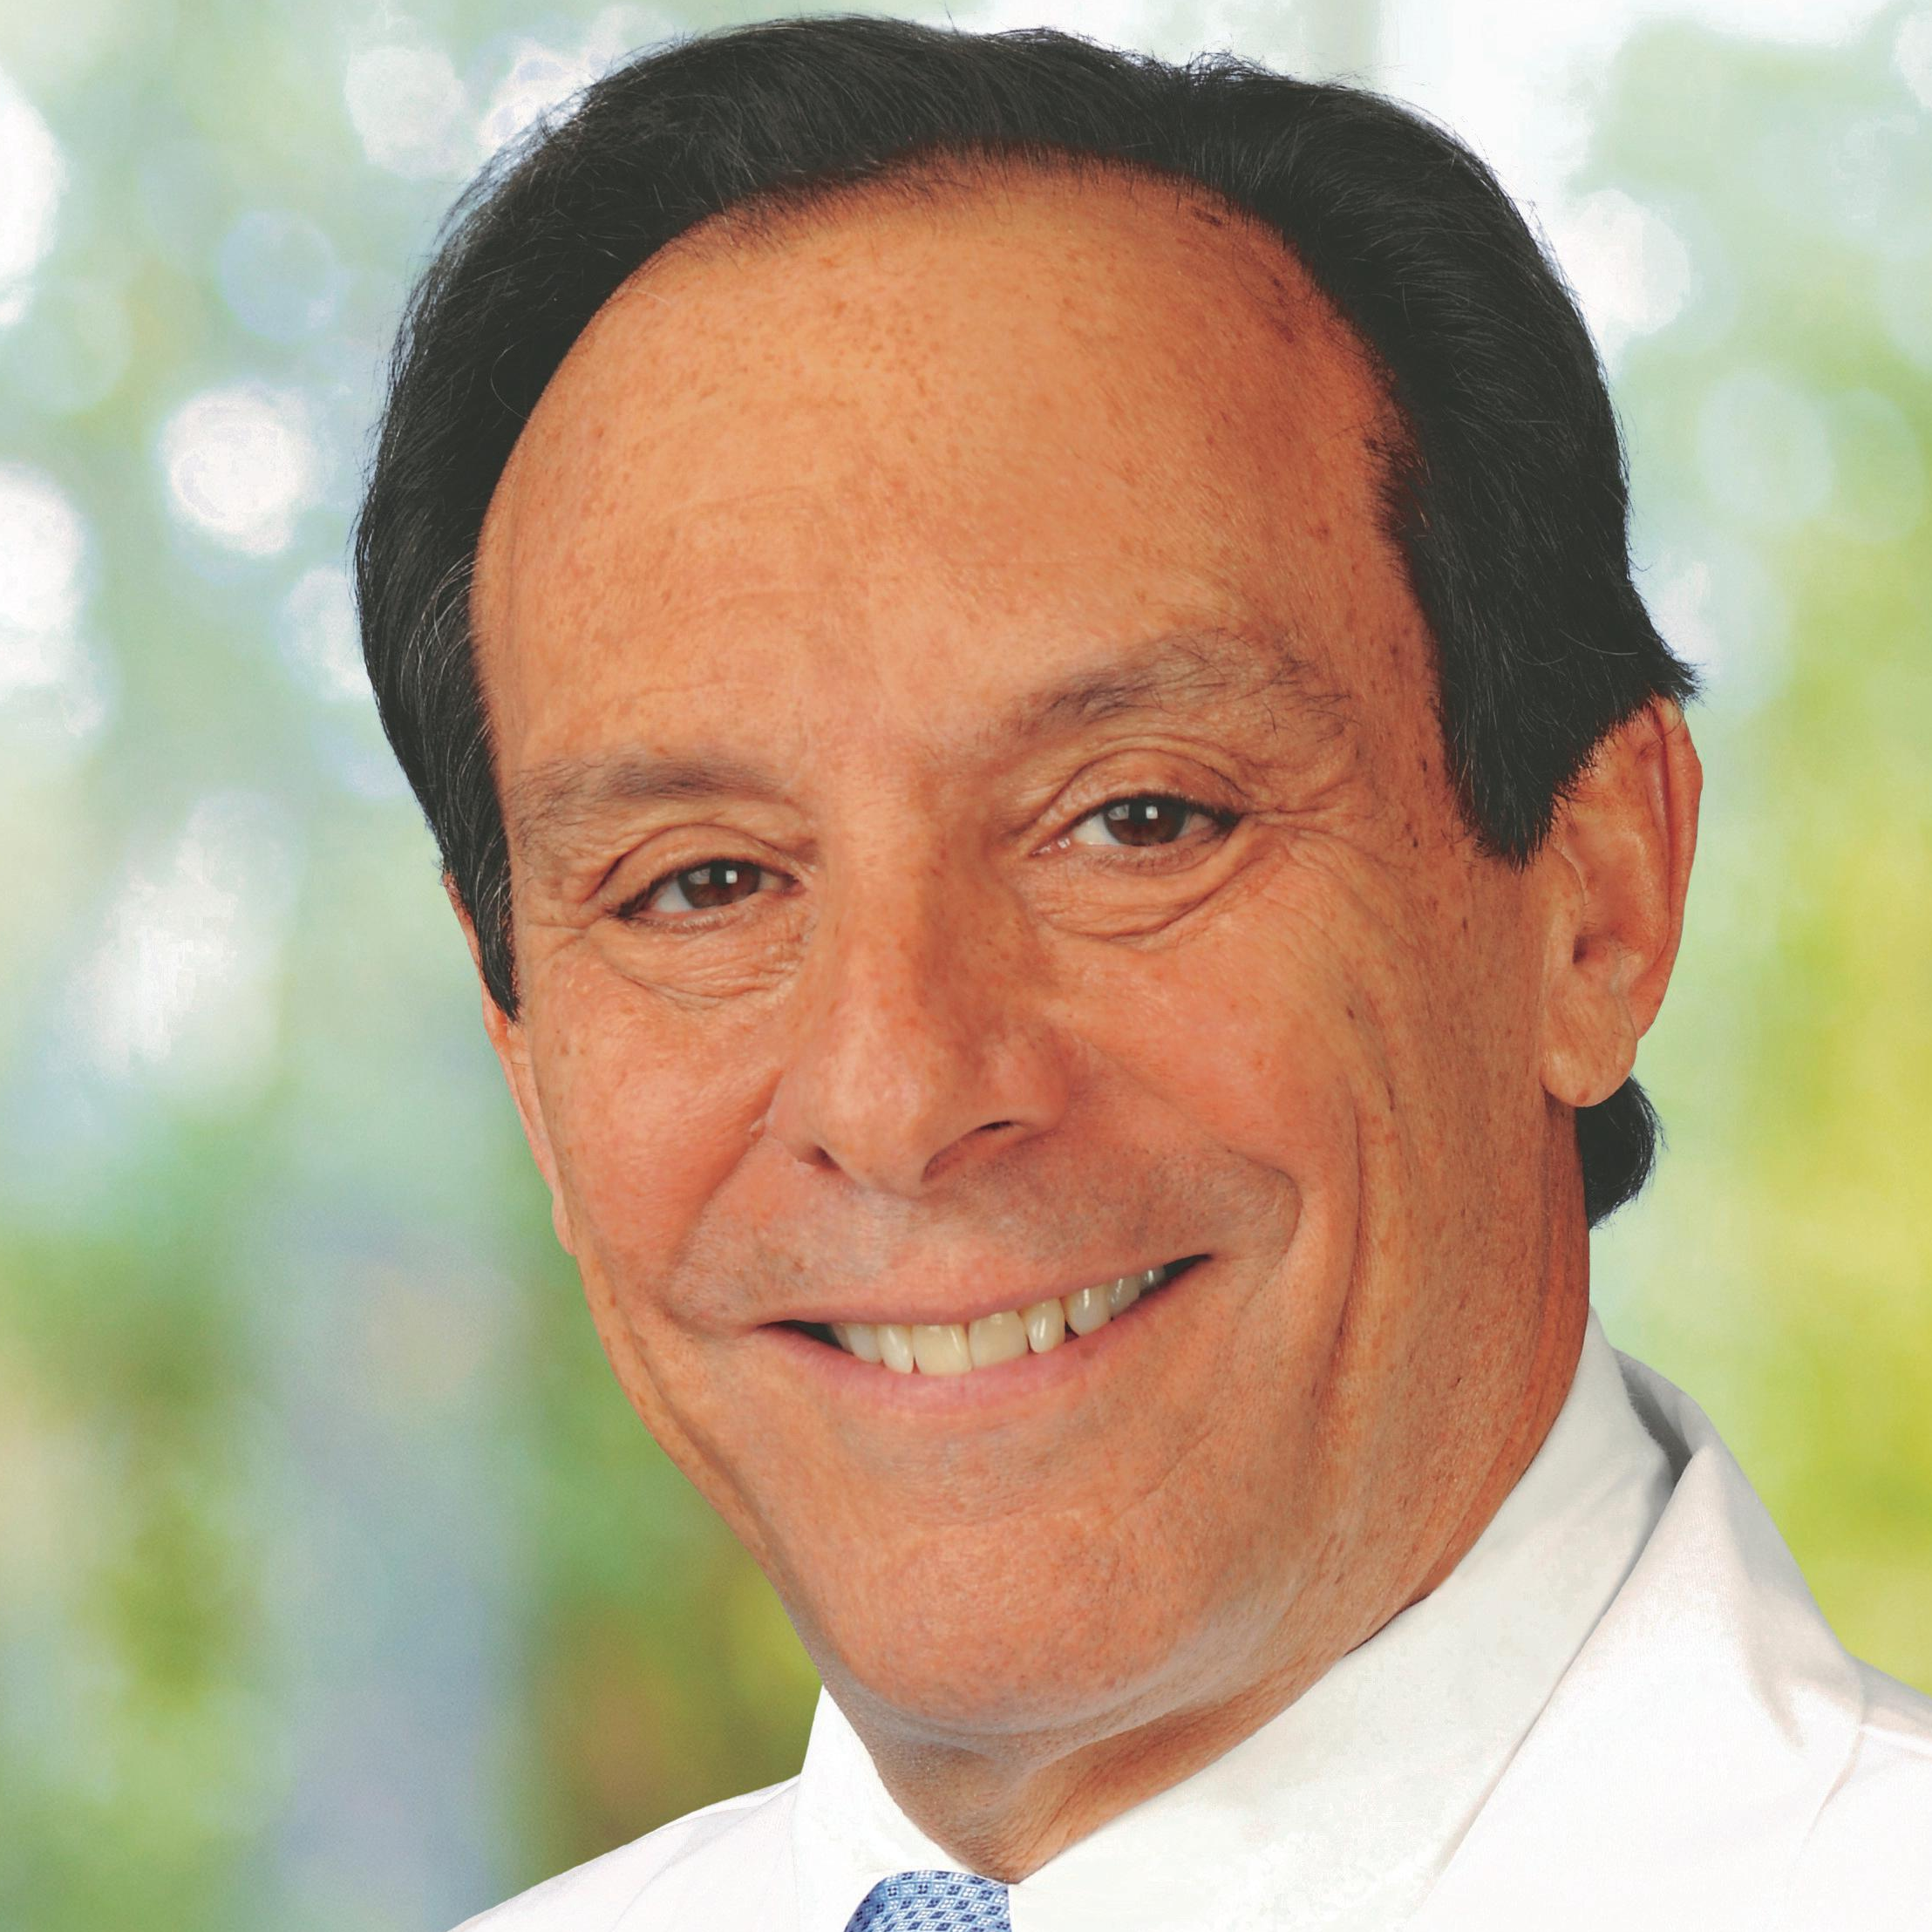 Image of Dr. Howard Baruch Schwartz, MD